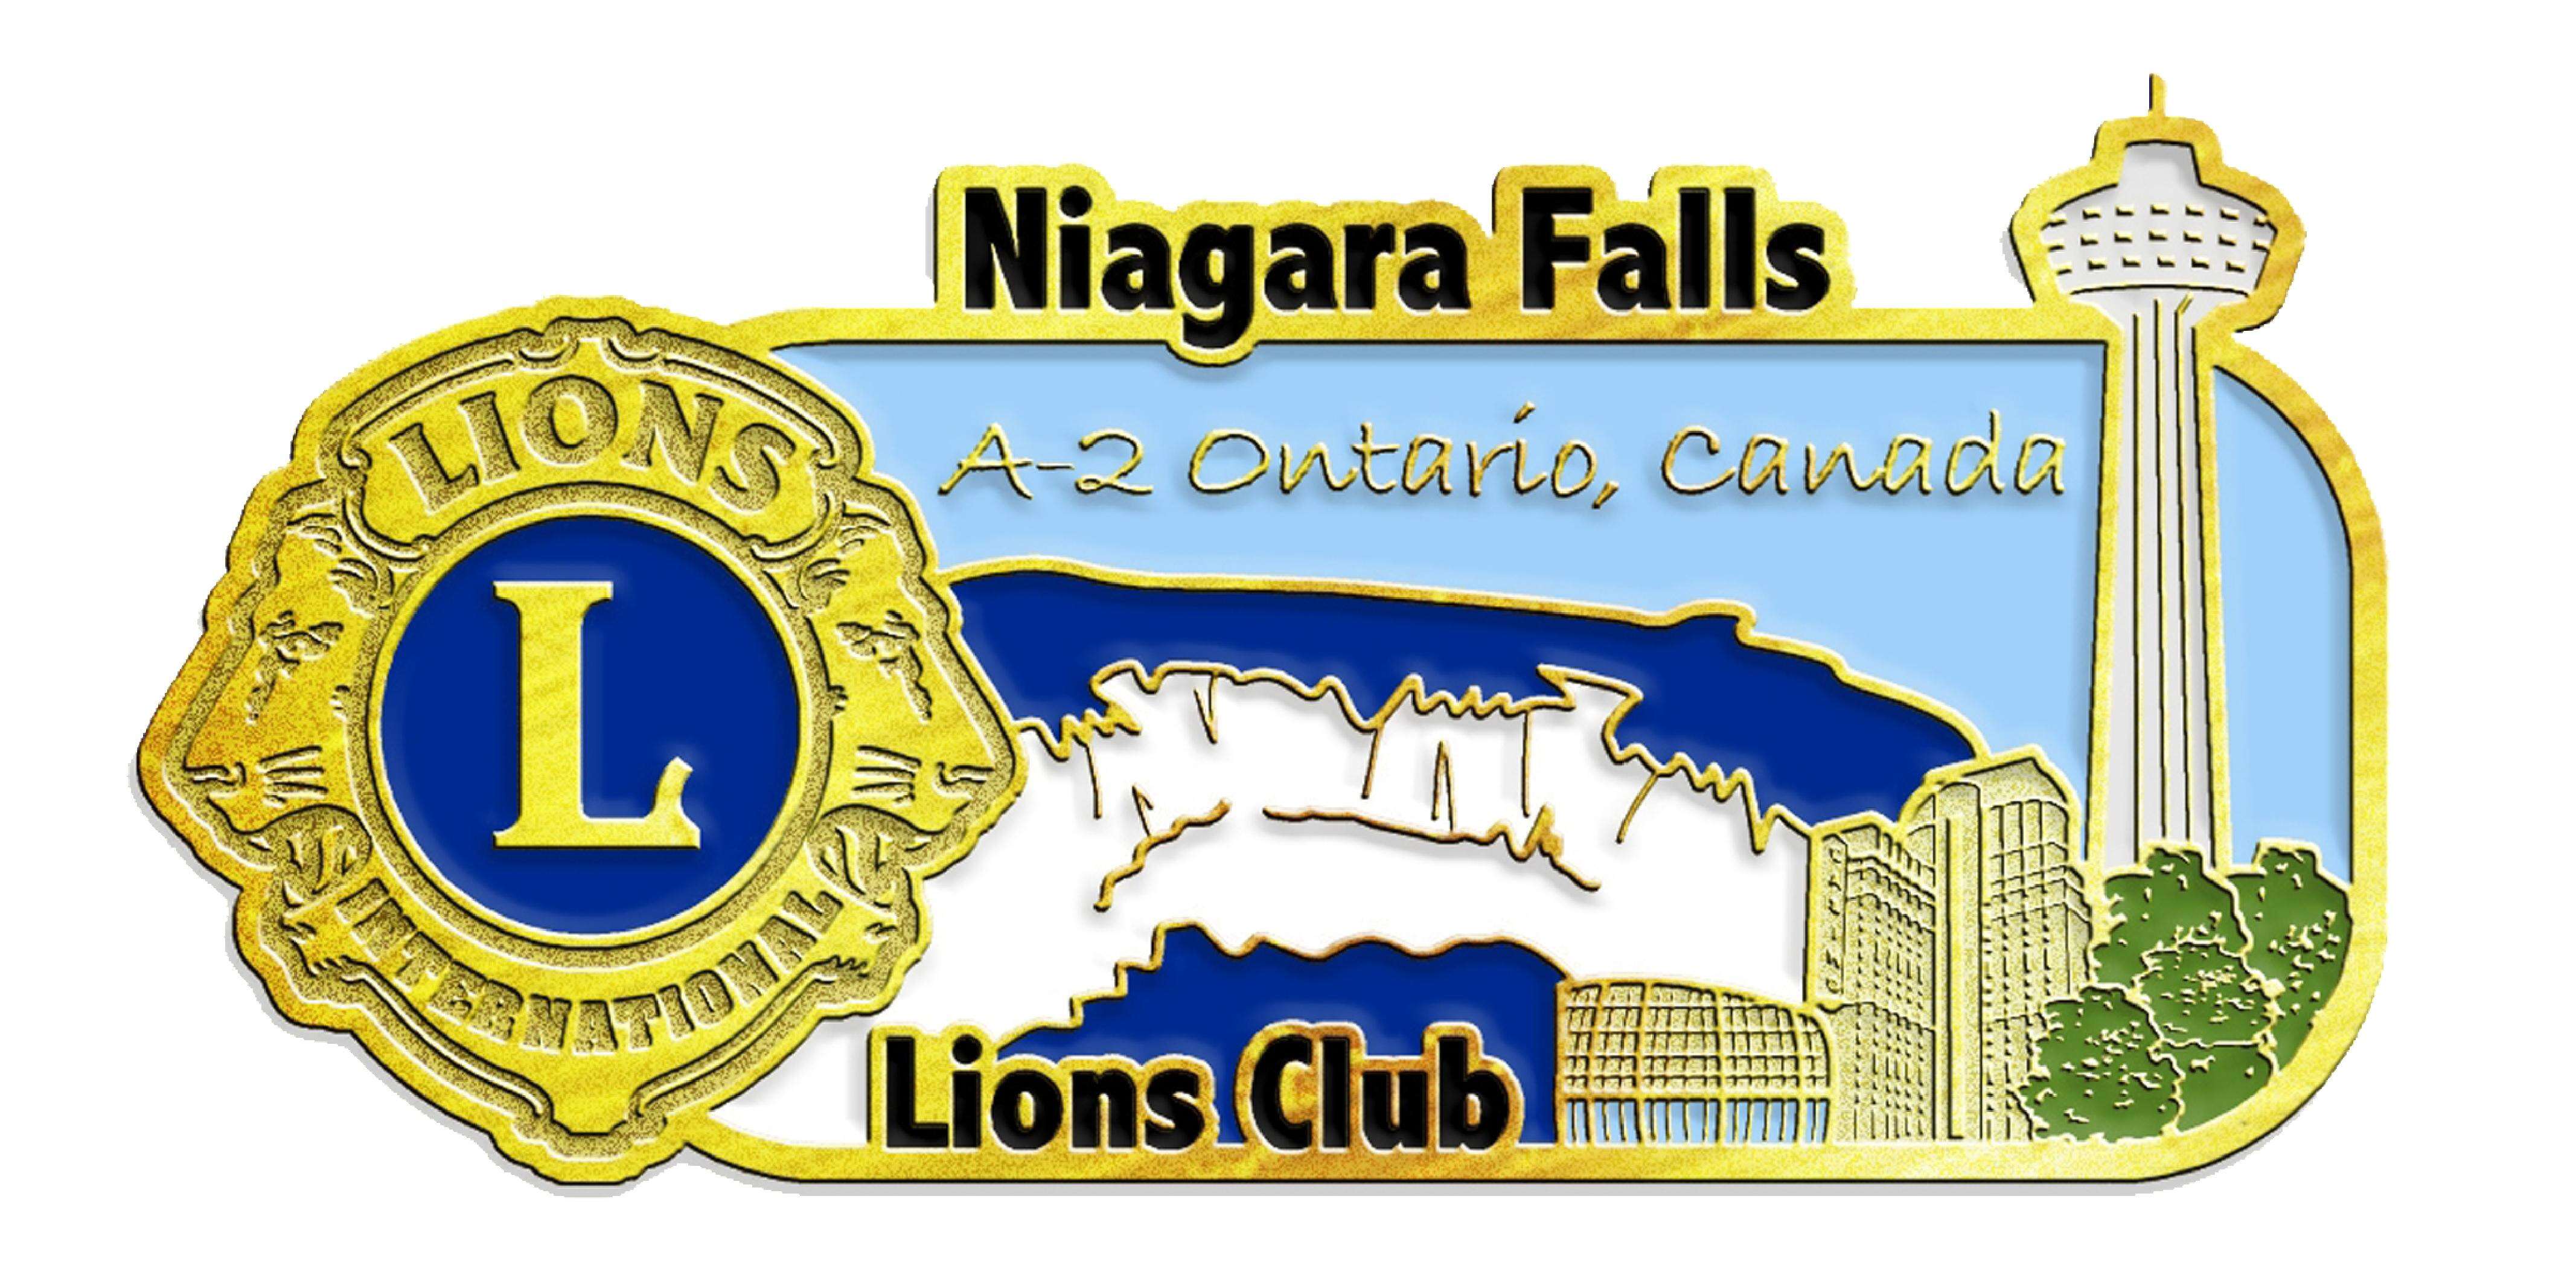 Niagara Falls Lions Club 